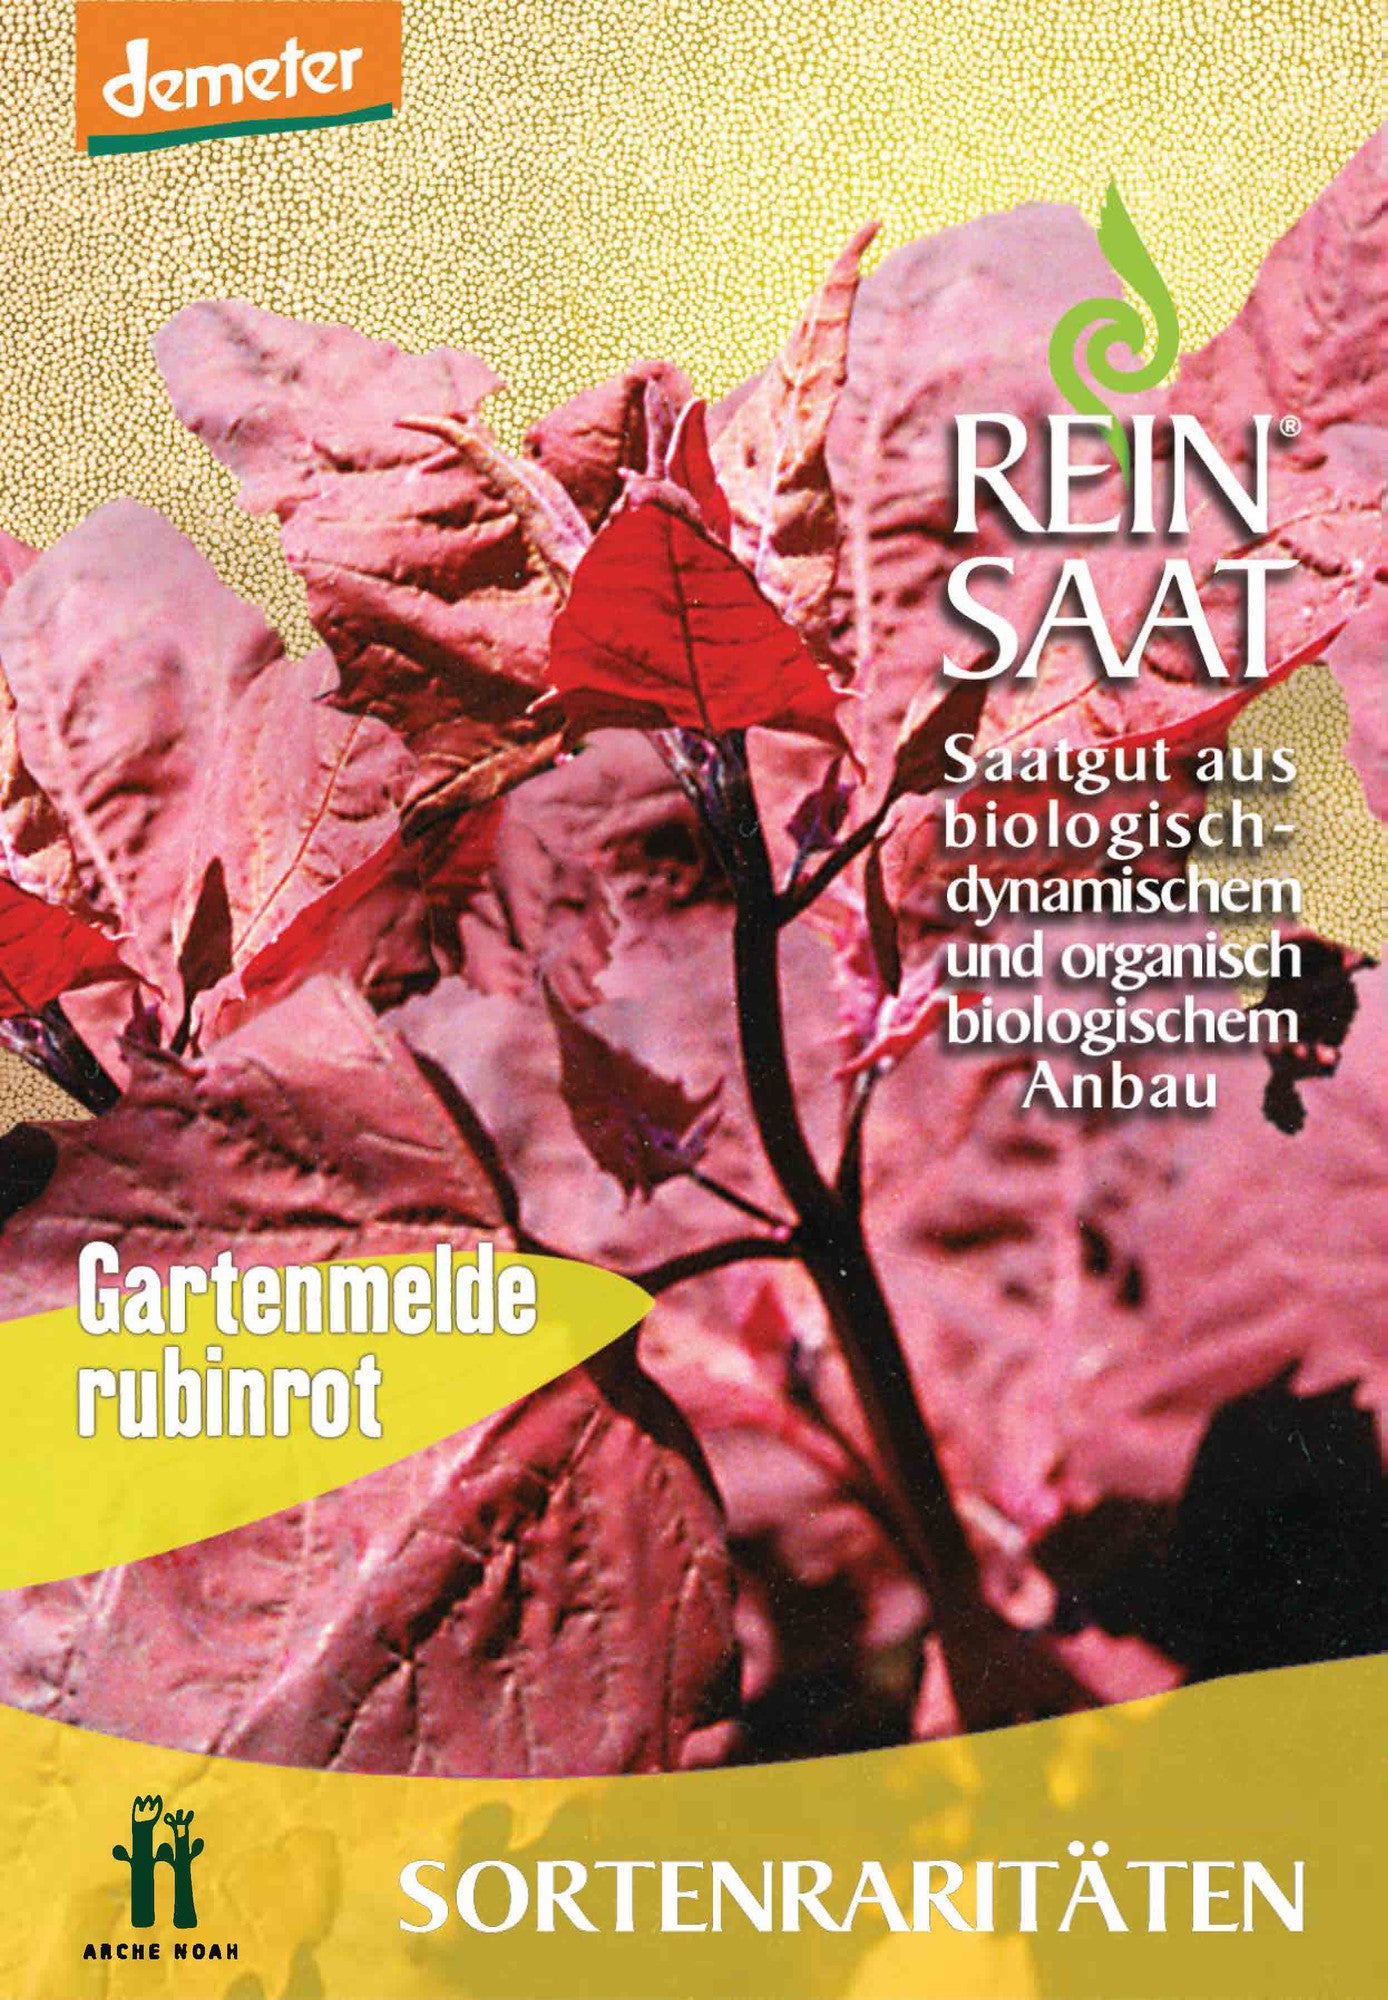 Gartenmelde Rubinrot | BIO Spinatsamen von Reinsaat